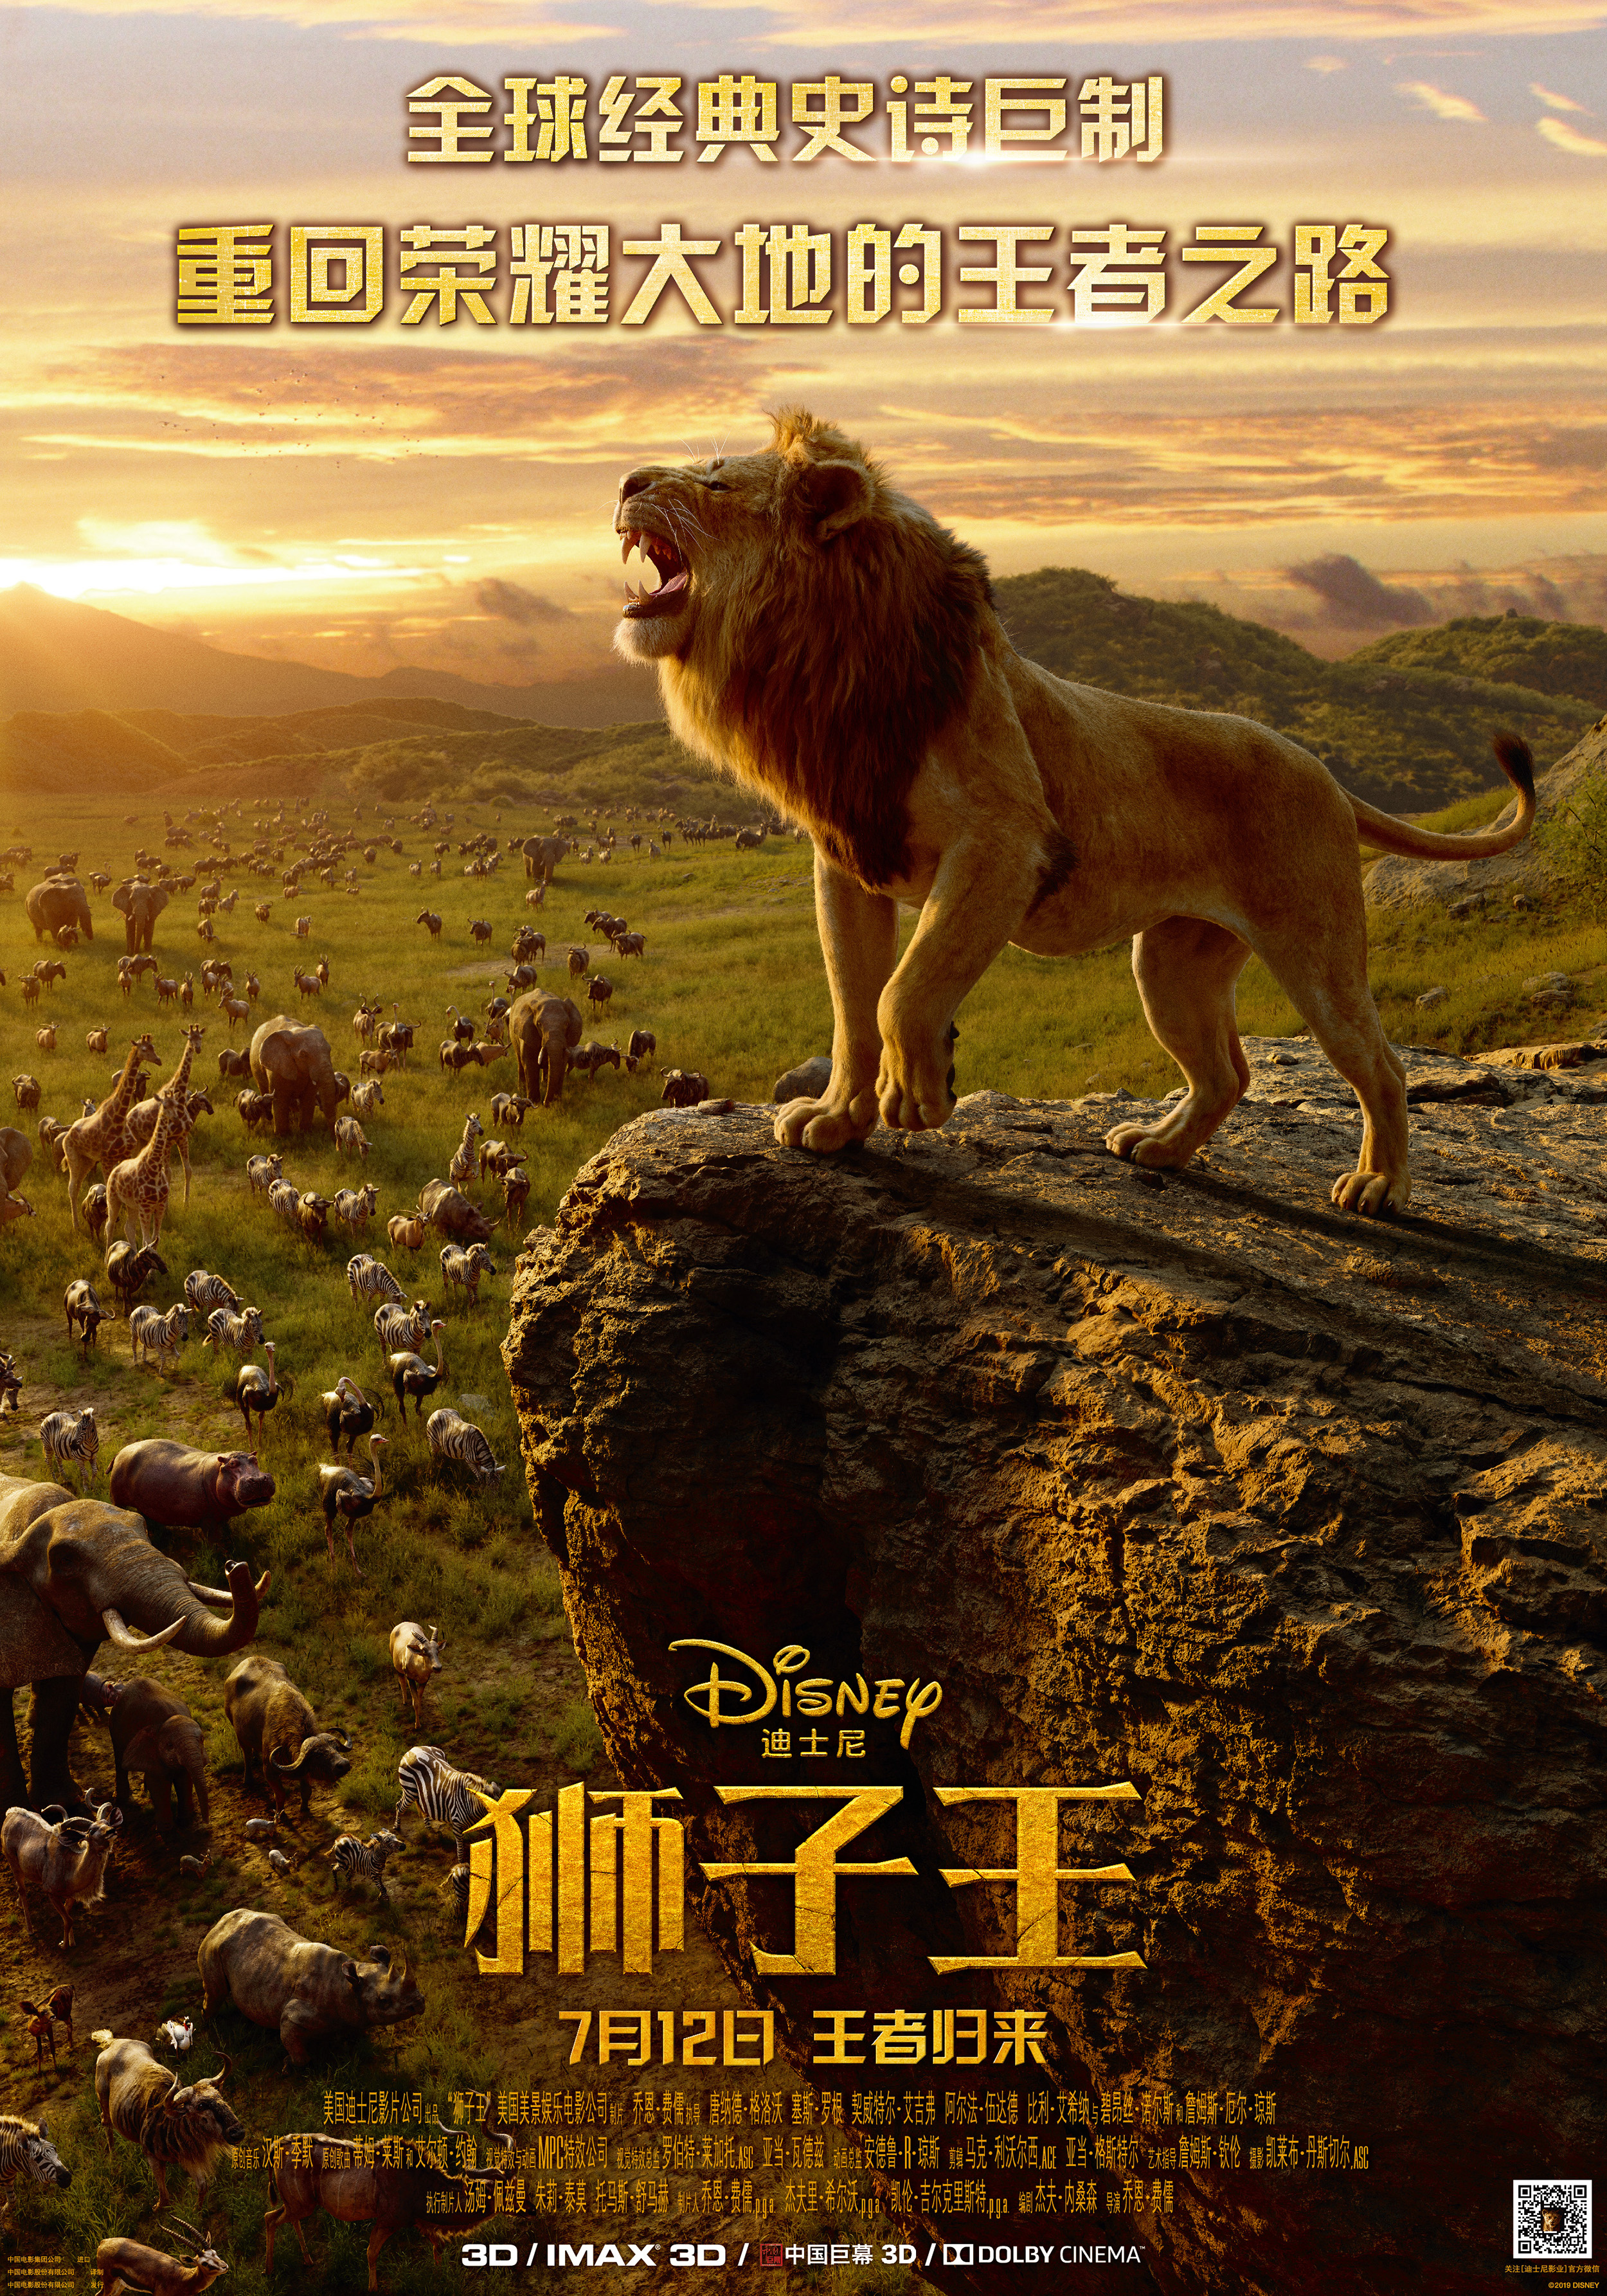 狮子王 / 狮子王真人版【原盘DIY台配国语/粤语 简繁/双语特效字幕】“修复蓝光机黑屏问题” The Lion King 2019 1080p V2 Blu-ray AVC DTS-HD MA 7.1-Thor@HDSky[42.52 GB]-3.jpg